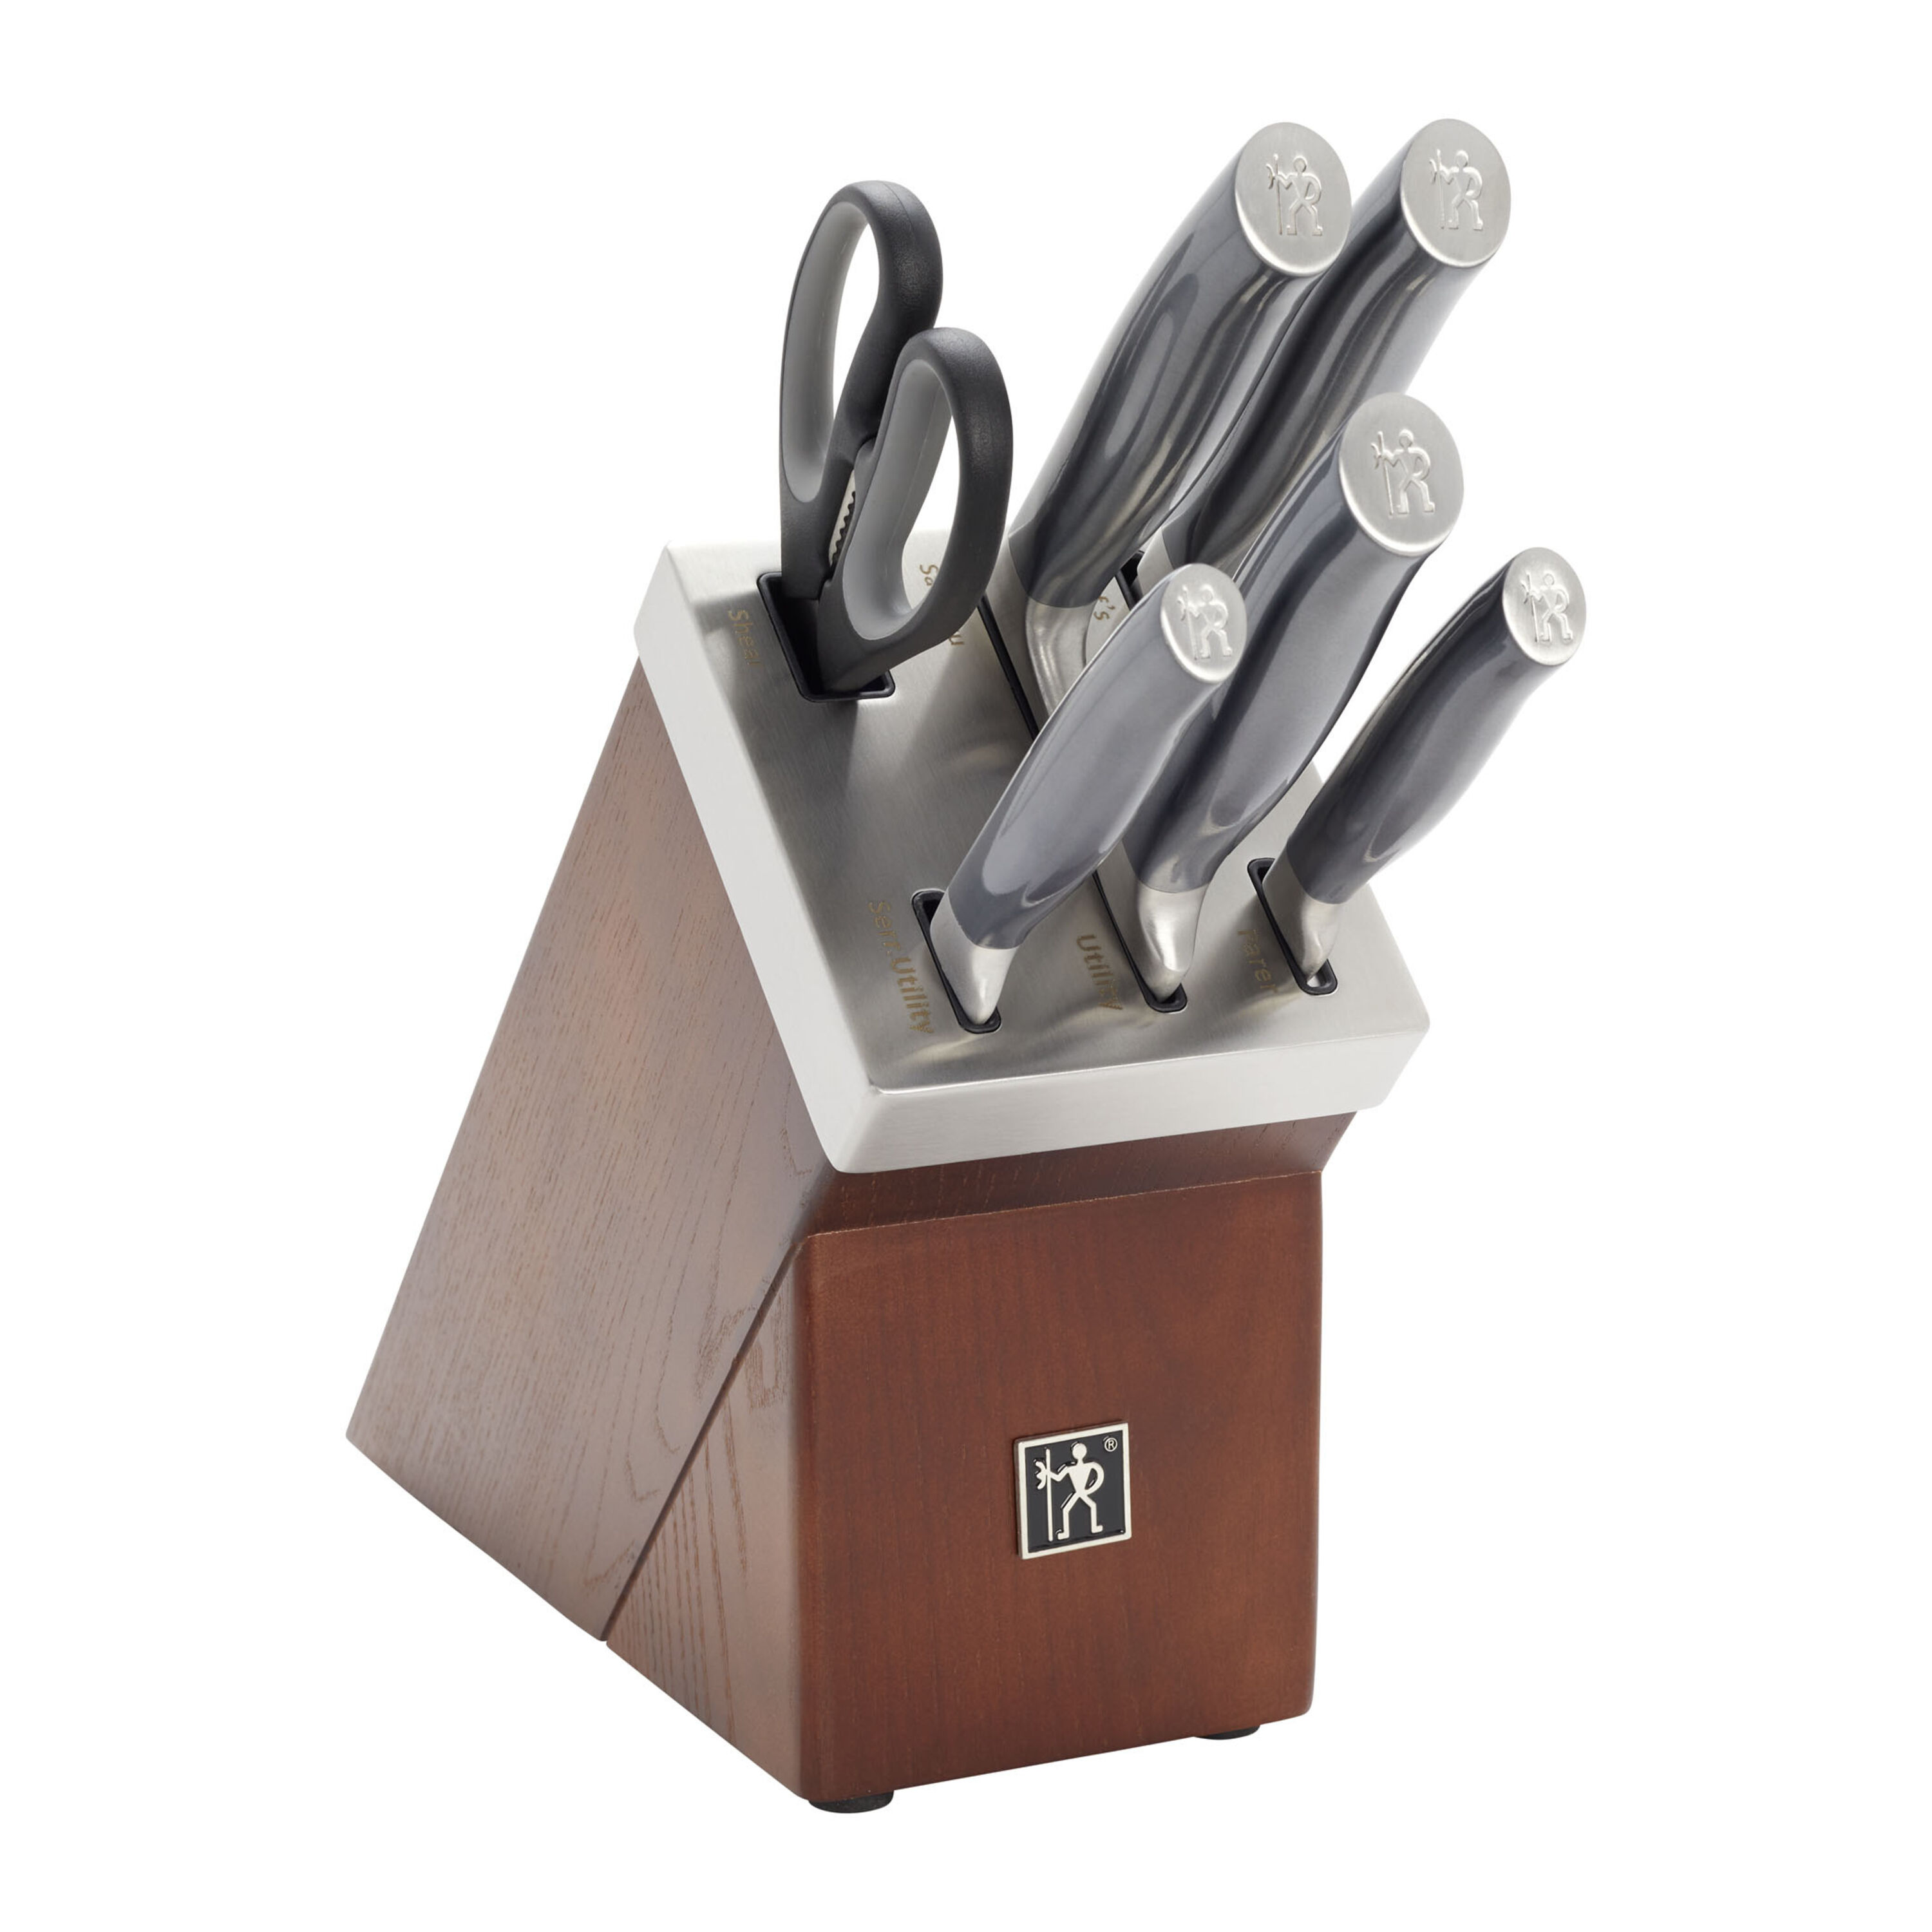 HENCKELS Elan 7-Pc Self-Sharpening Knife Block Set & Reviews